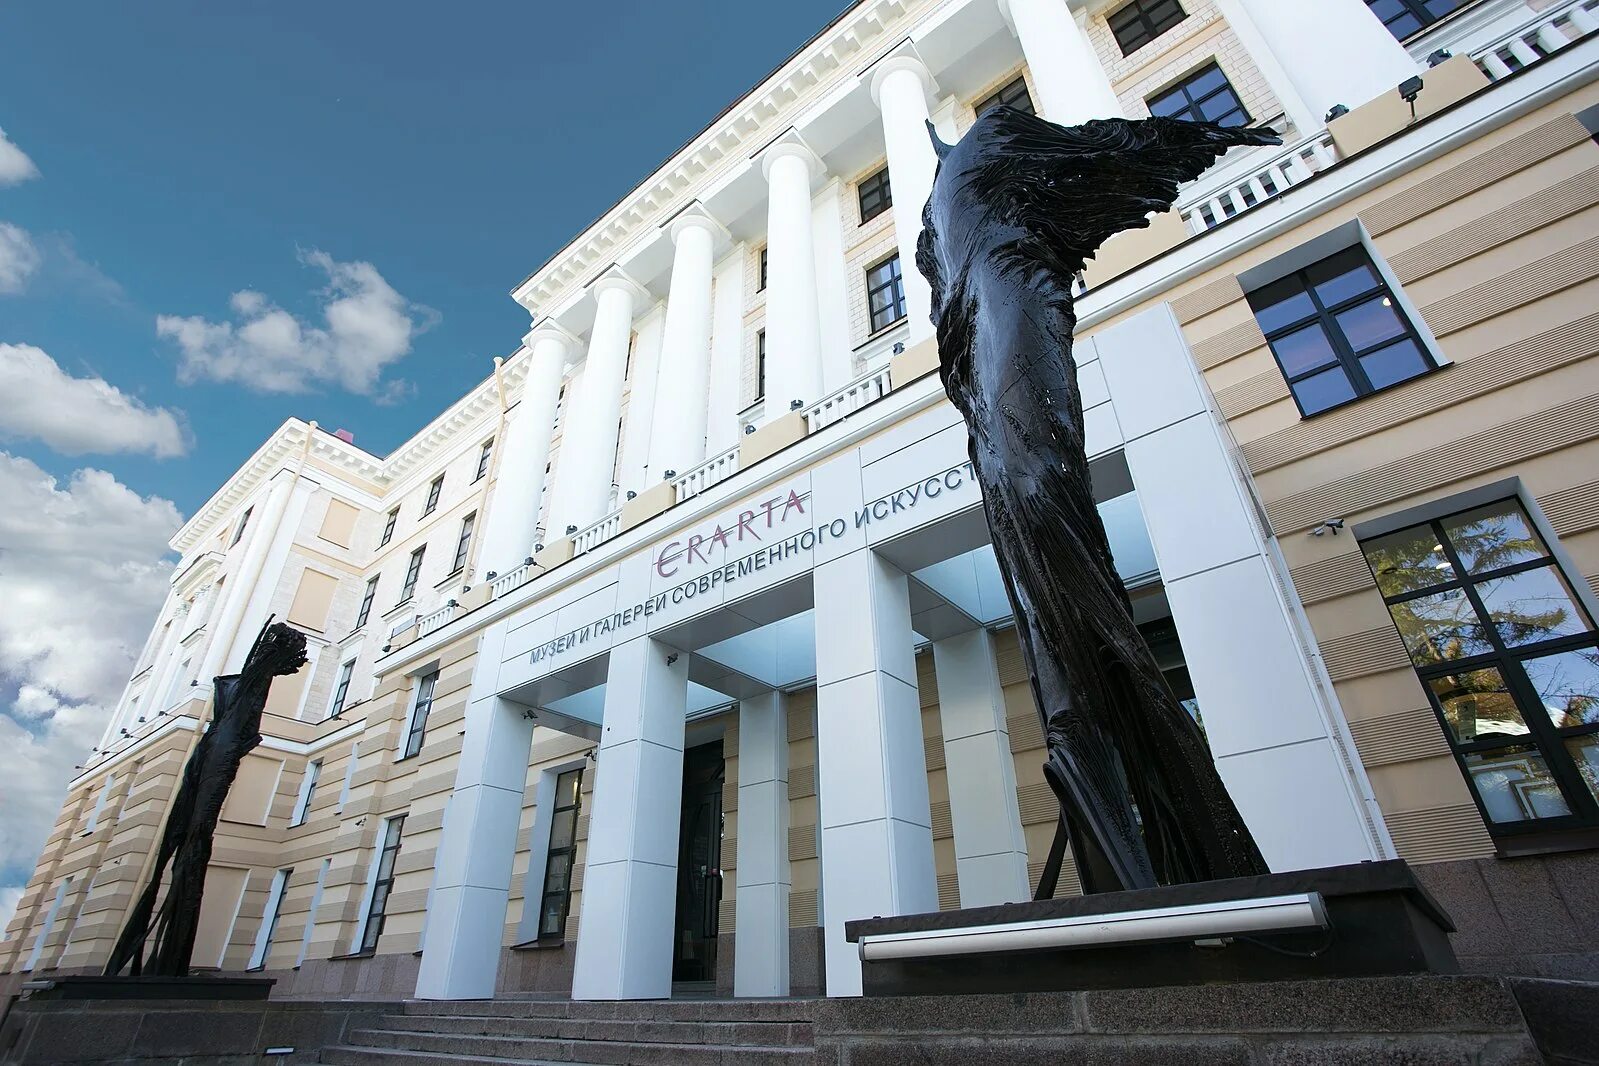 Эрарта это. Музей современного искусства Эрарта Санкт-Петербург. Эрарта музей современного искусства. Музей современного искусства Питер. Музей Эрарта здание.